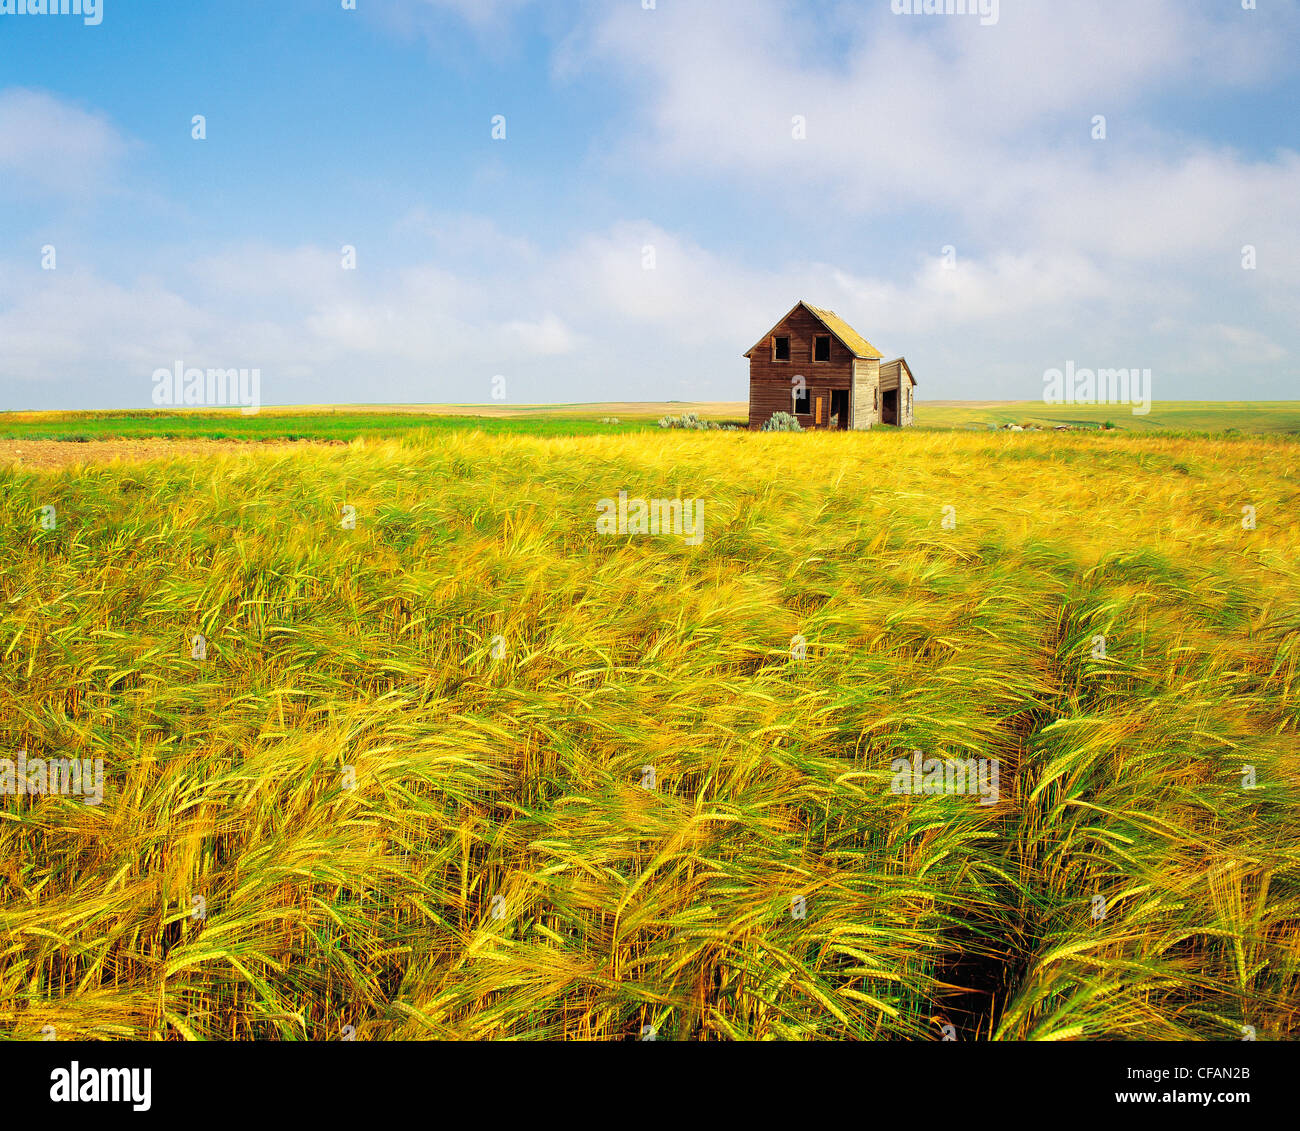 Abandoned farmhouse in barley field near Cadillac, Saskatchewan, Canada Stock Photo